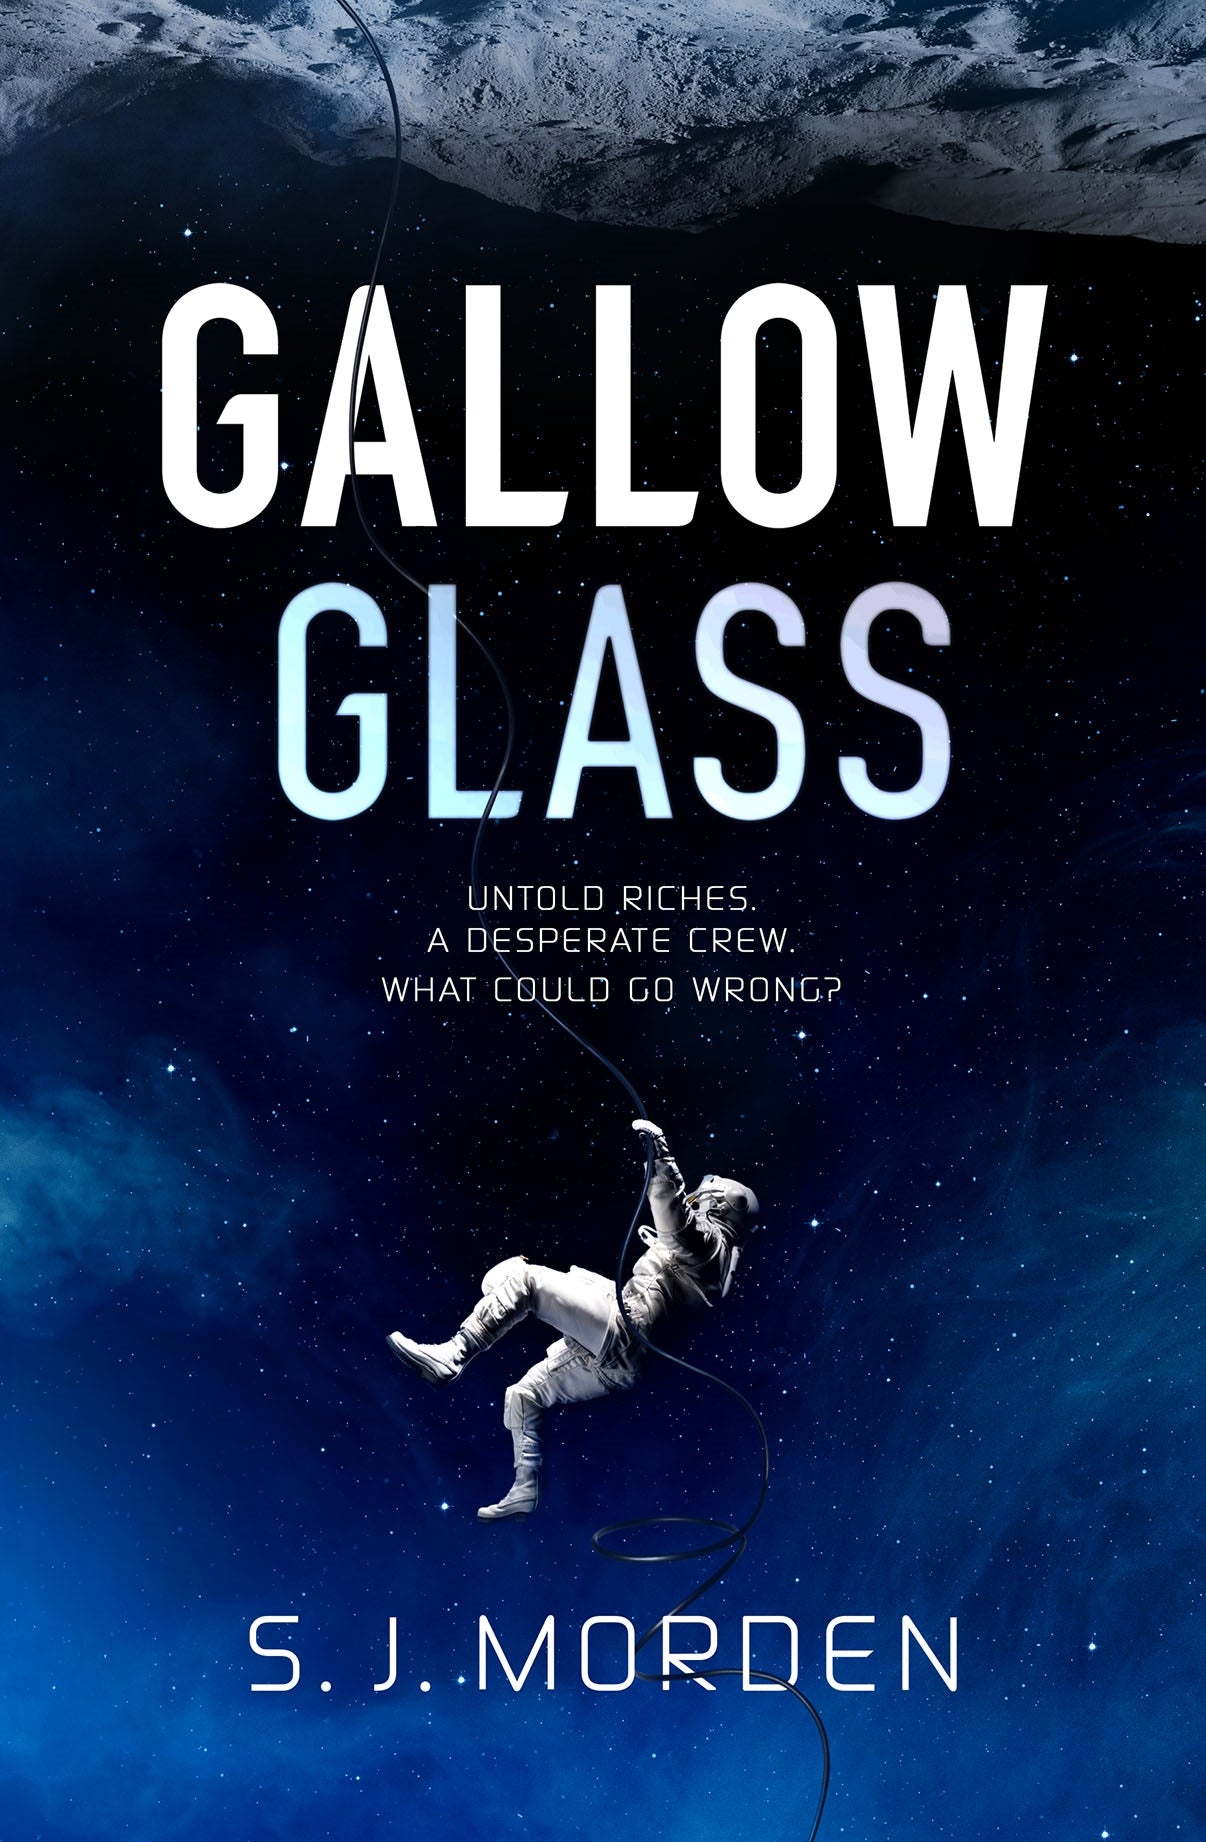 Gallowglass by S J Morden